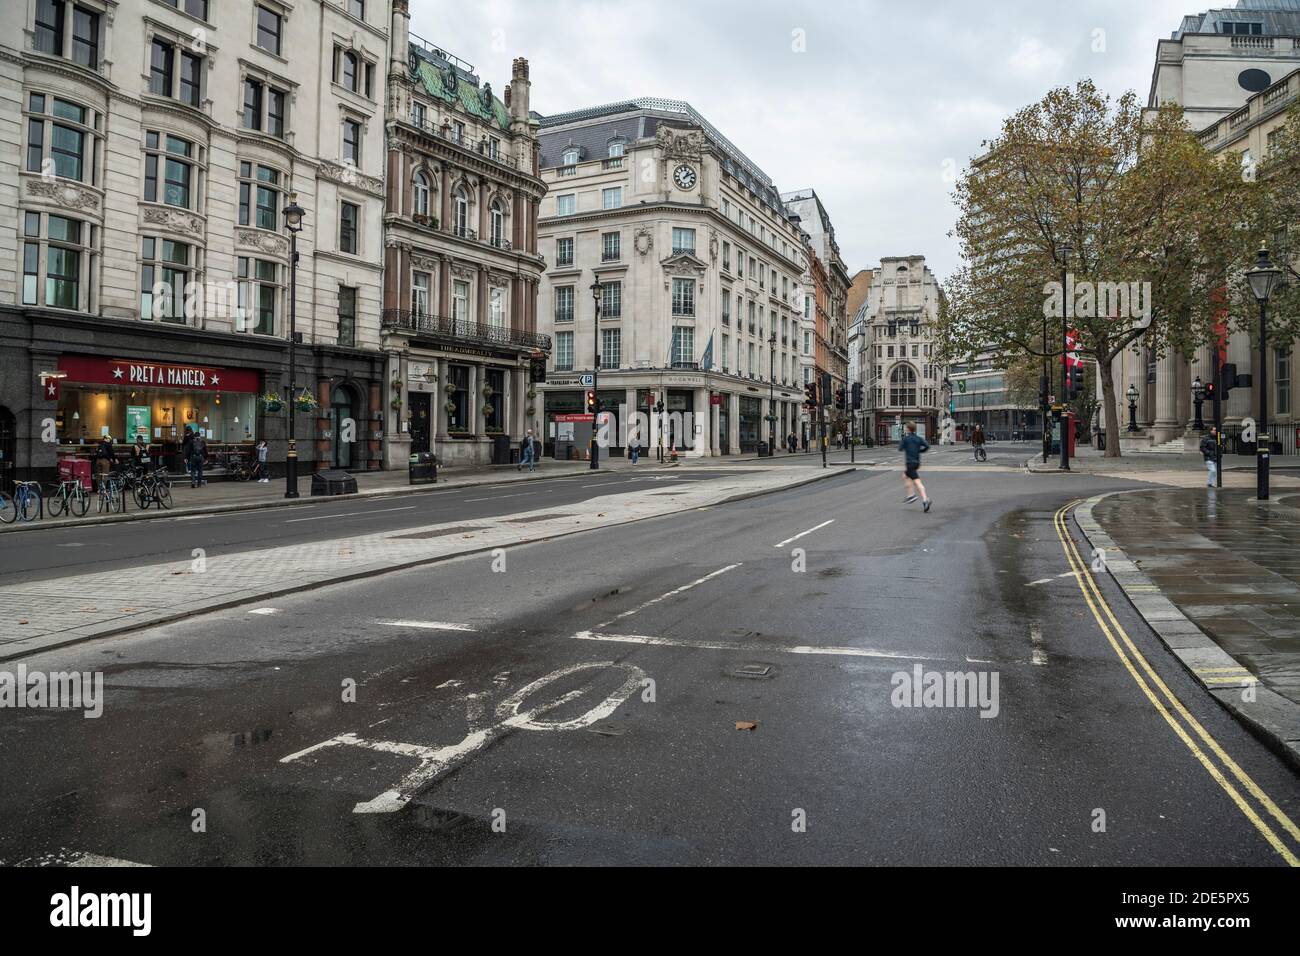 Des rues calmes et vides à Londres, sans voitures ni circulation pendant le confinement pandémique Covid-19 à Trafalgar Square à Londres, dans la City of Westminster, en Angleterre, au Royaume-Uni Banque D'Images